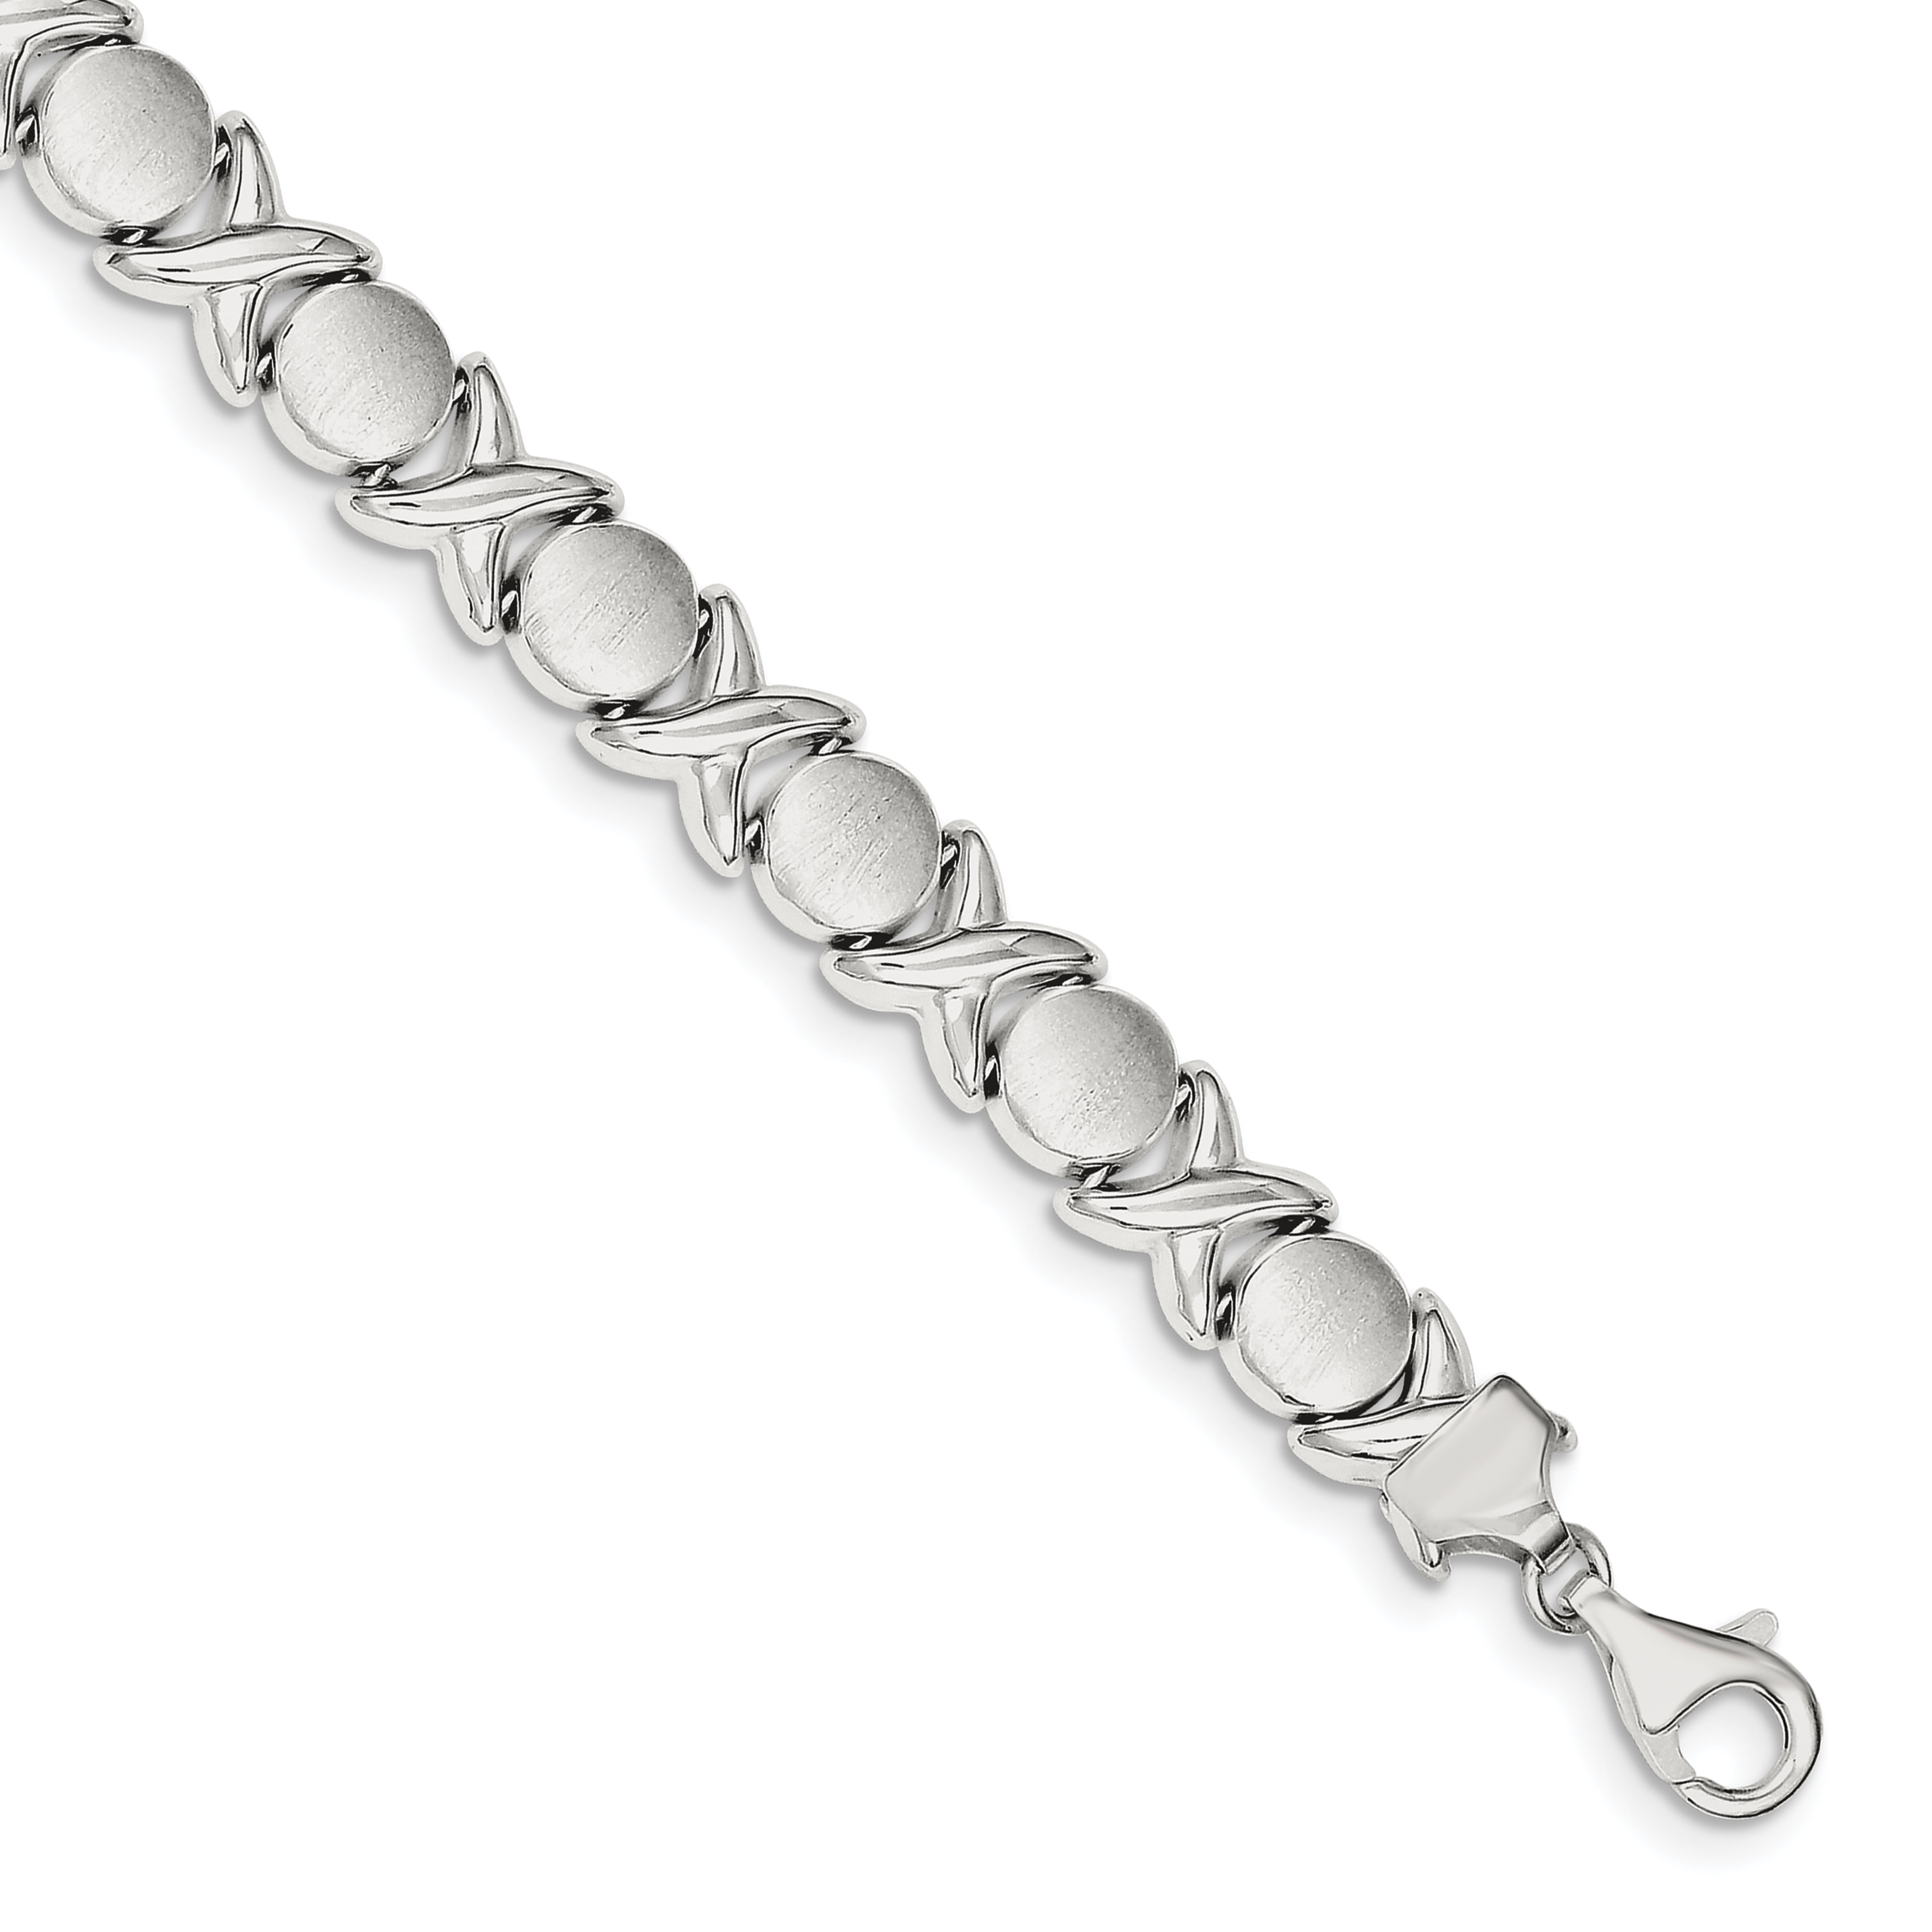 Sterling Silver Turtles Tension Hook Clasp Bangle Bracelet - Walmart.com